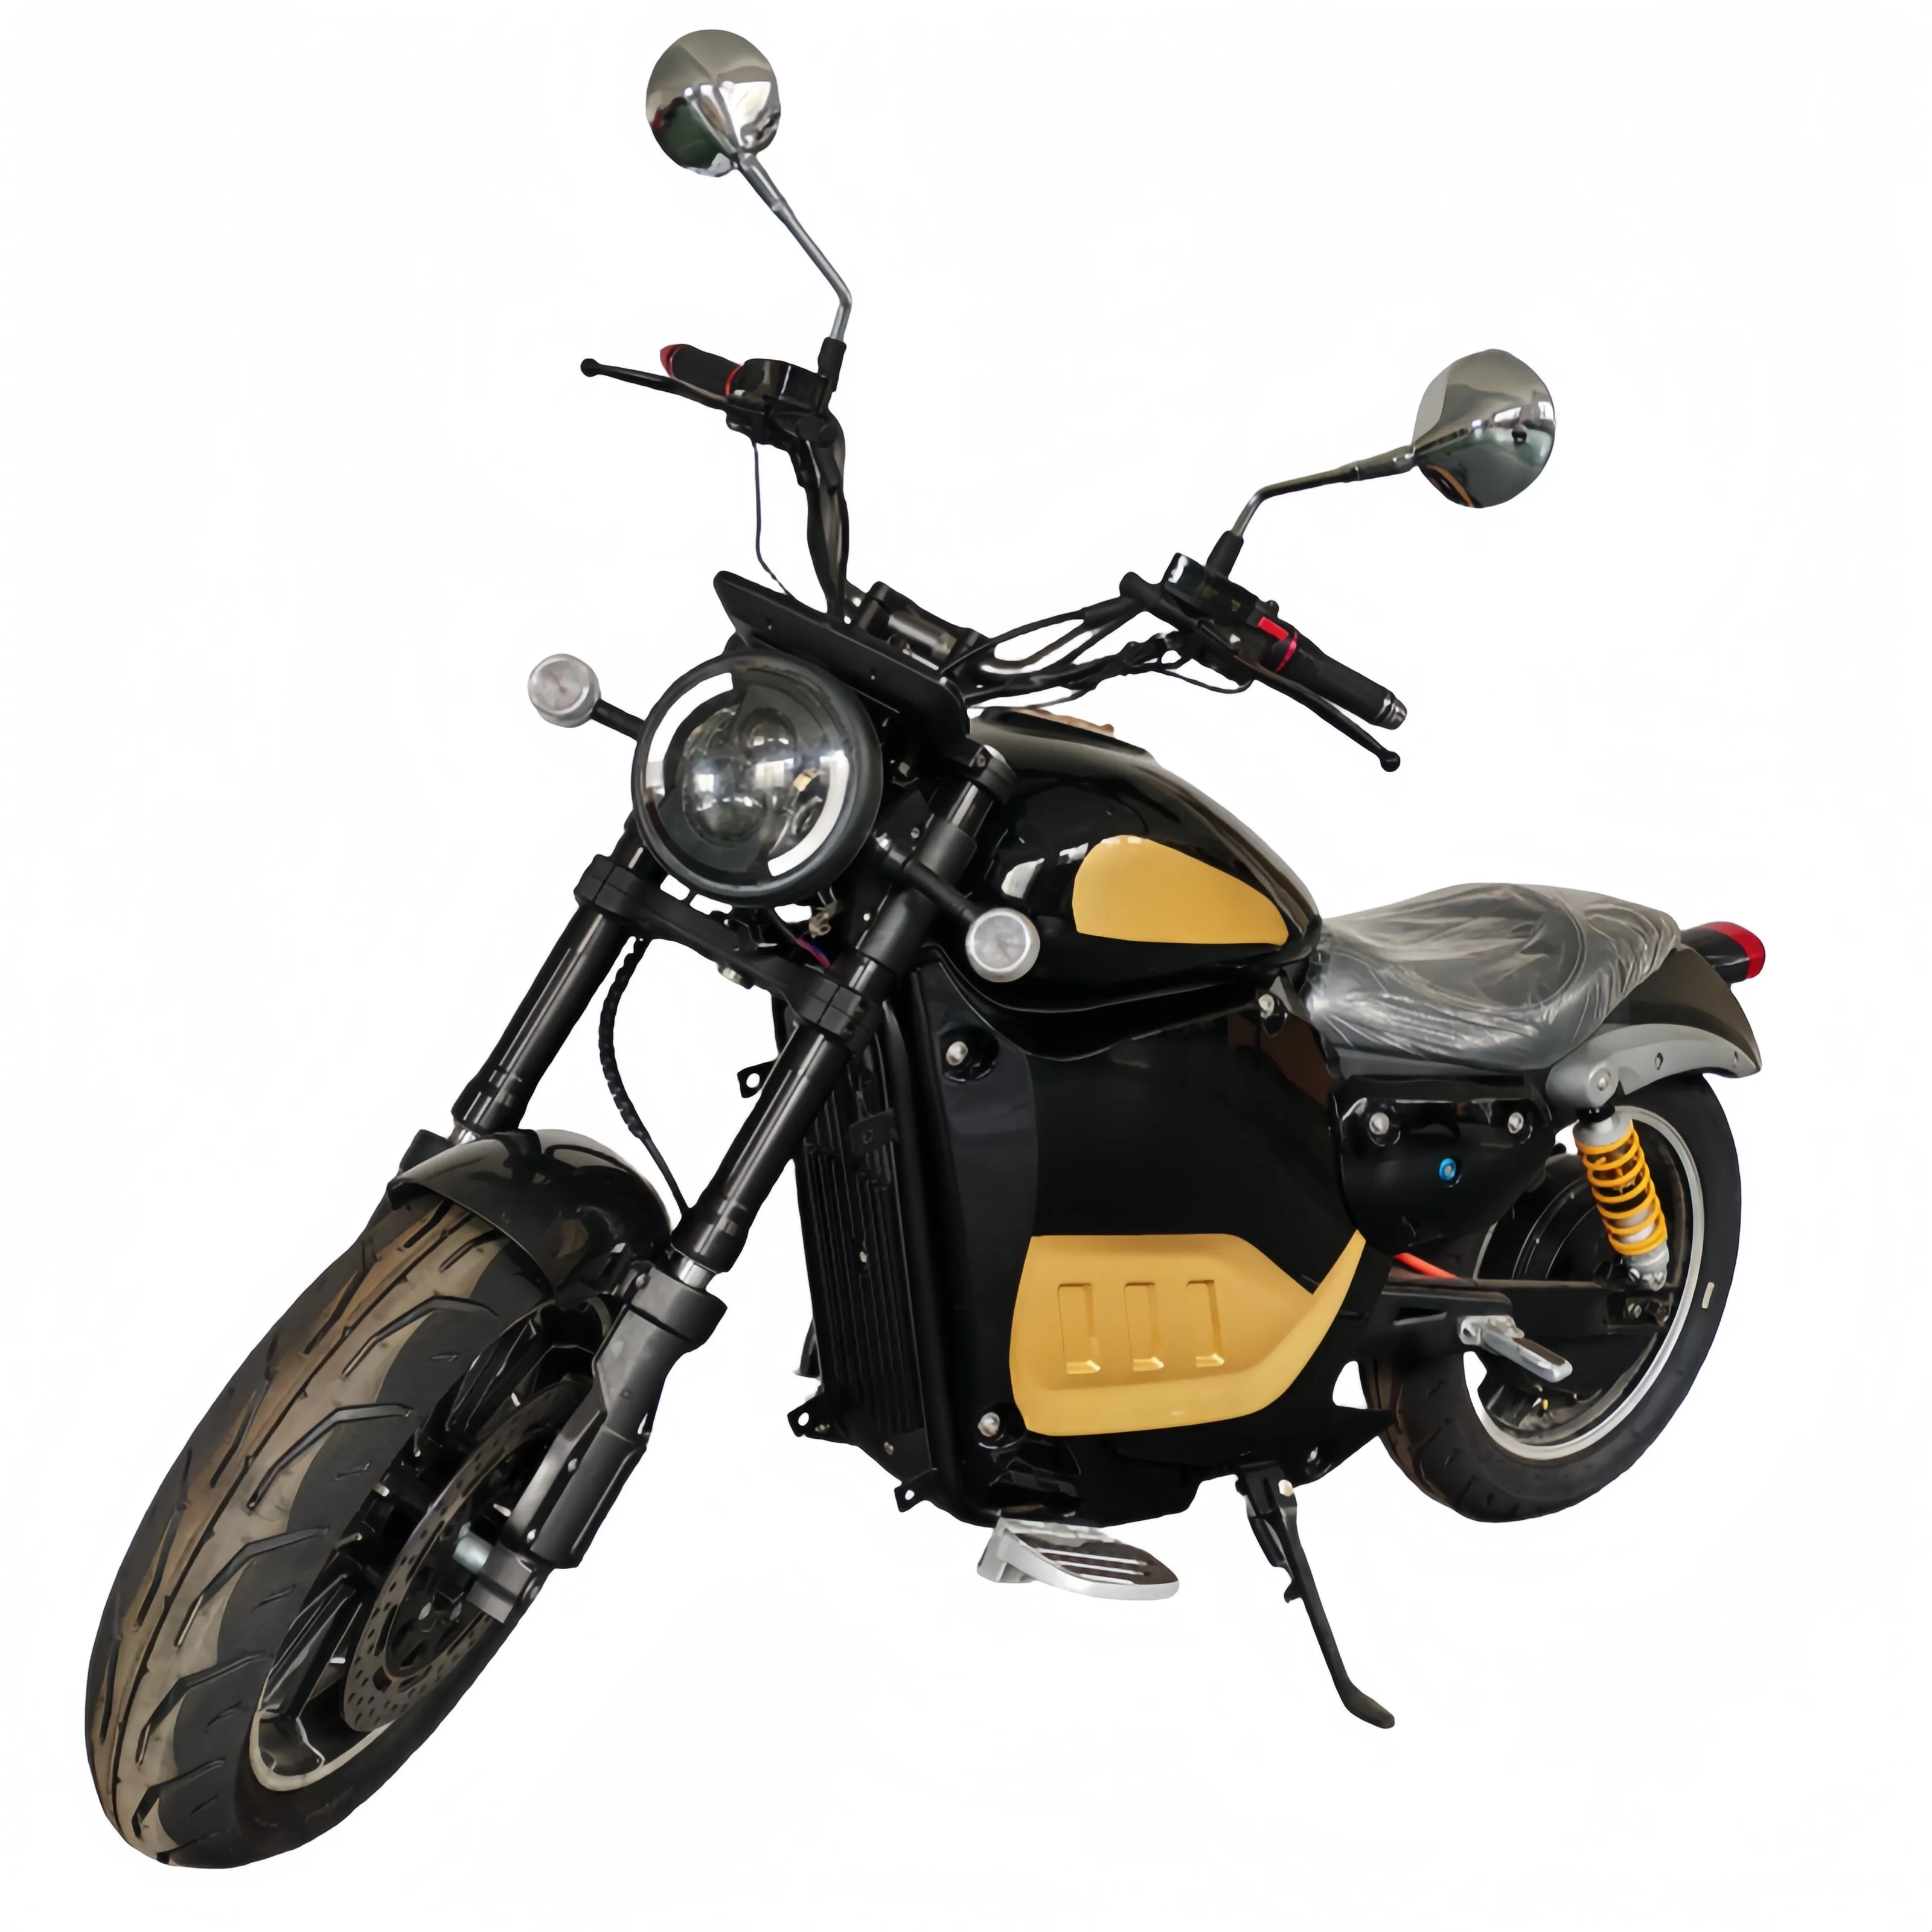 Sepeda motor listrik dewasa 72v 3000w, sepeda motor berkualitas tinggi dan bertenaga